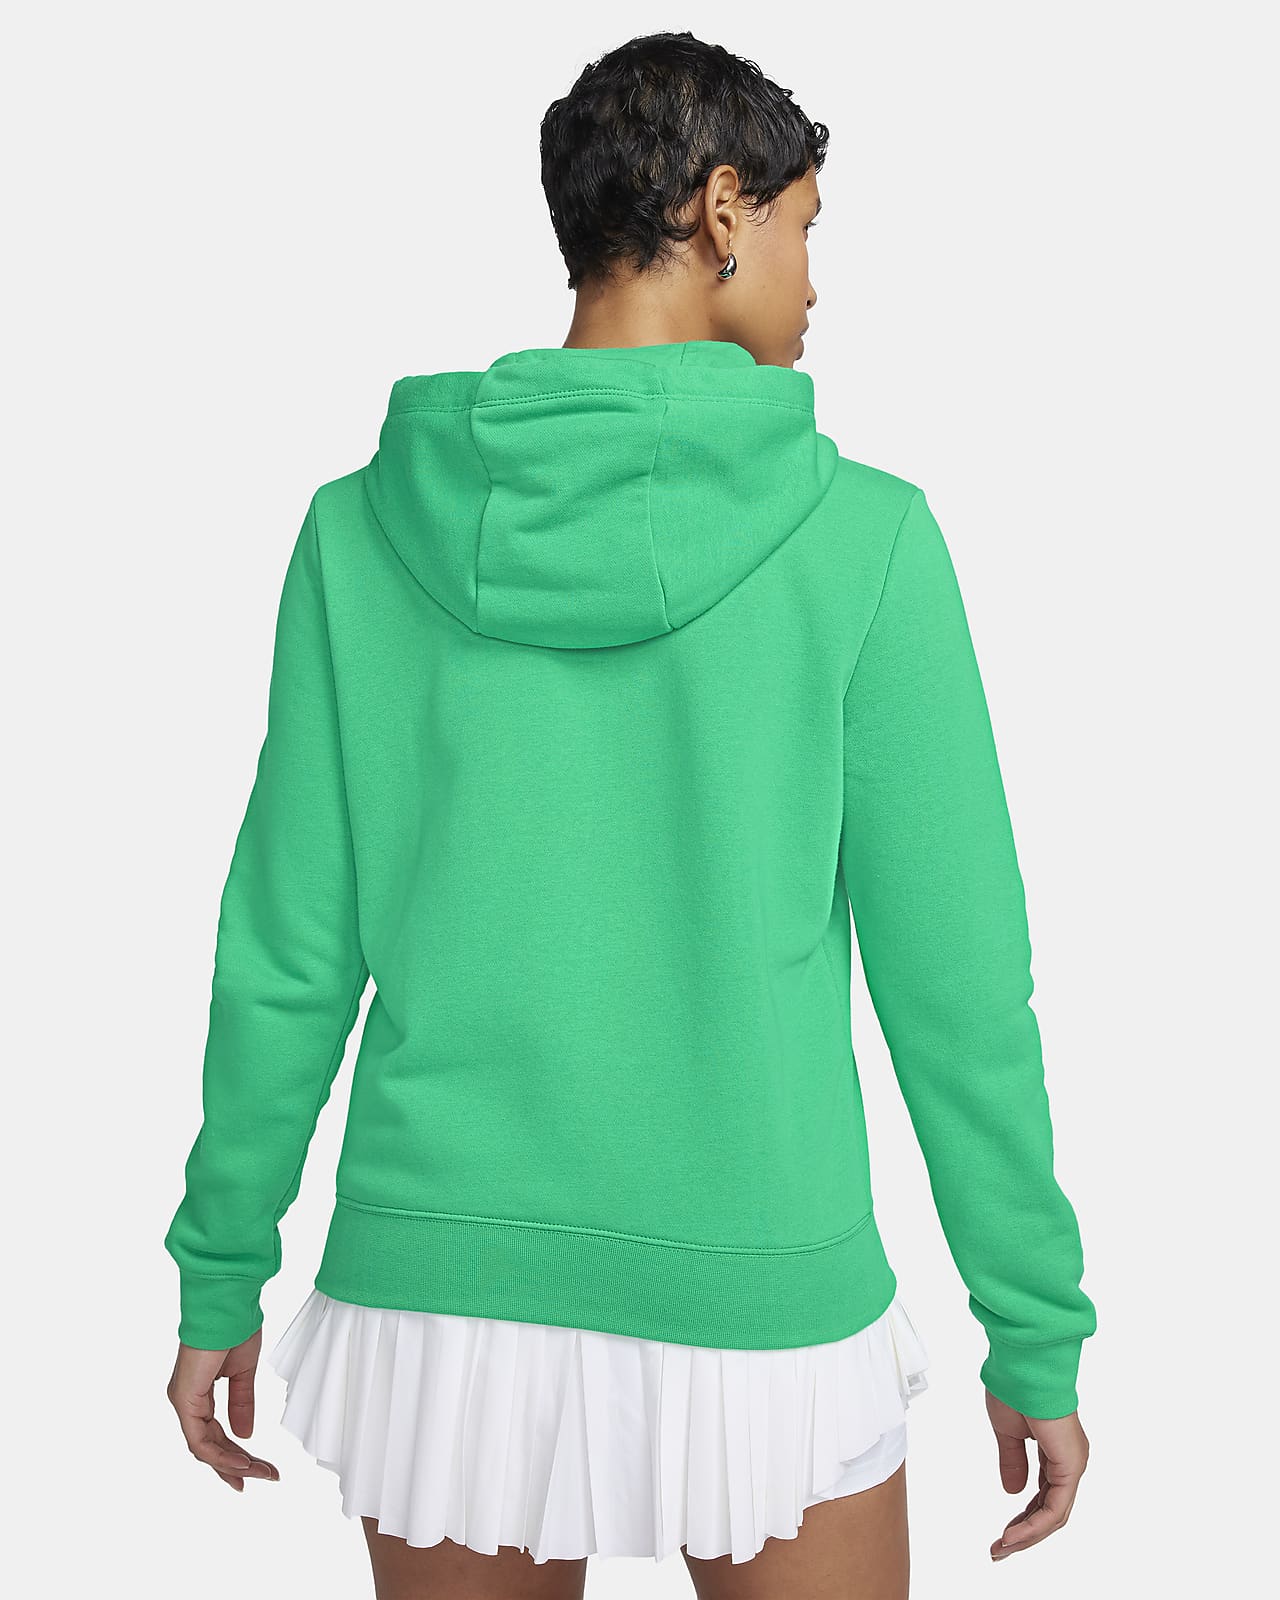 Nike Sportswear Essential Women's FullZip Hoodie Jacket Black RRP £44.95